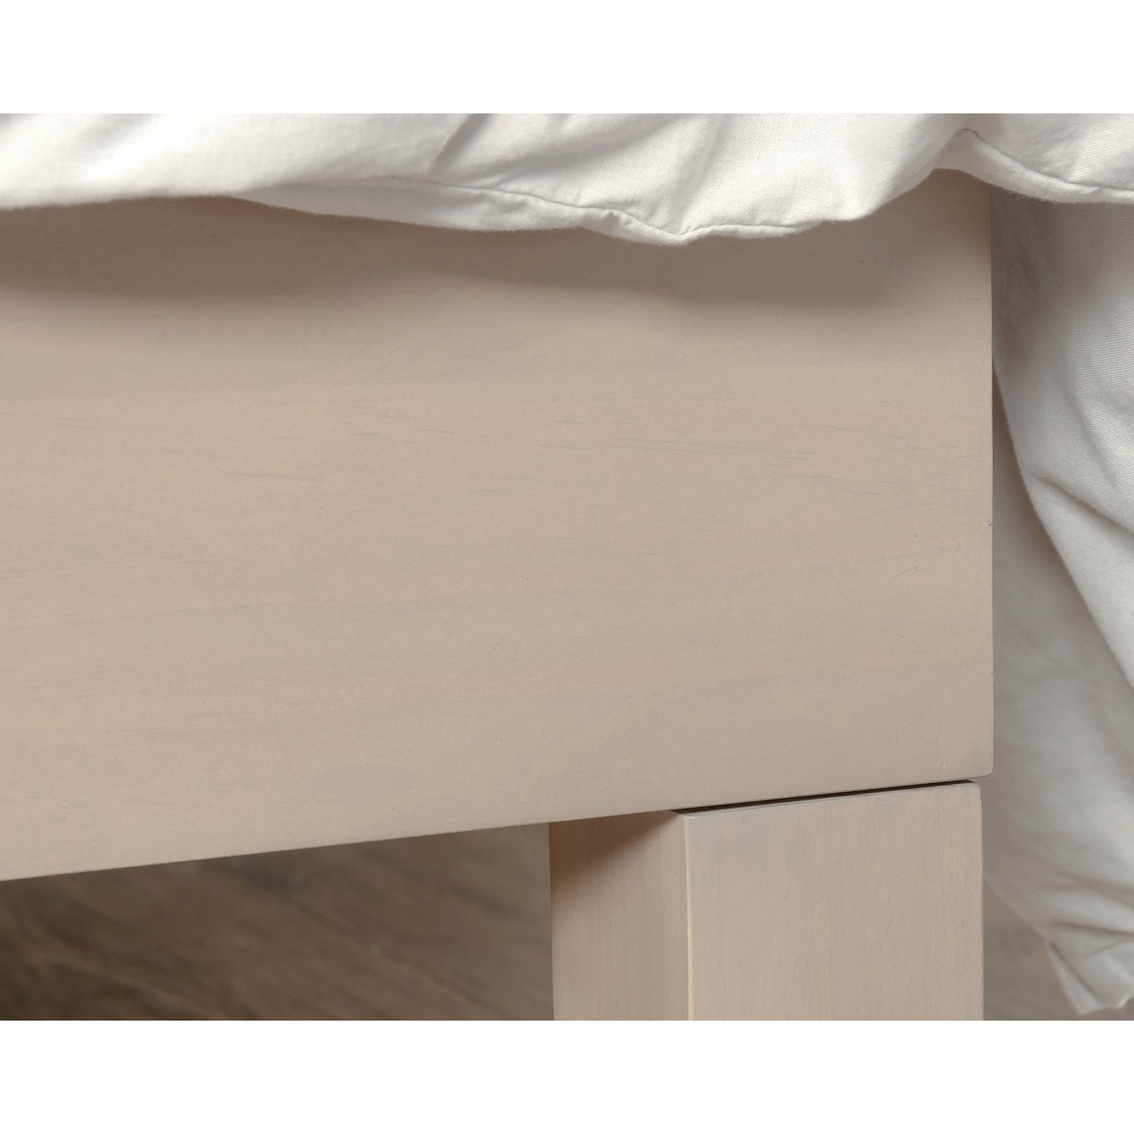 Sauder Queen Size Platform Bed, Solid Wood - Image 4 of 6